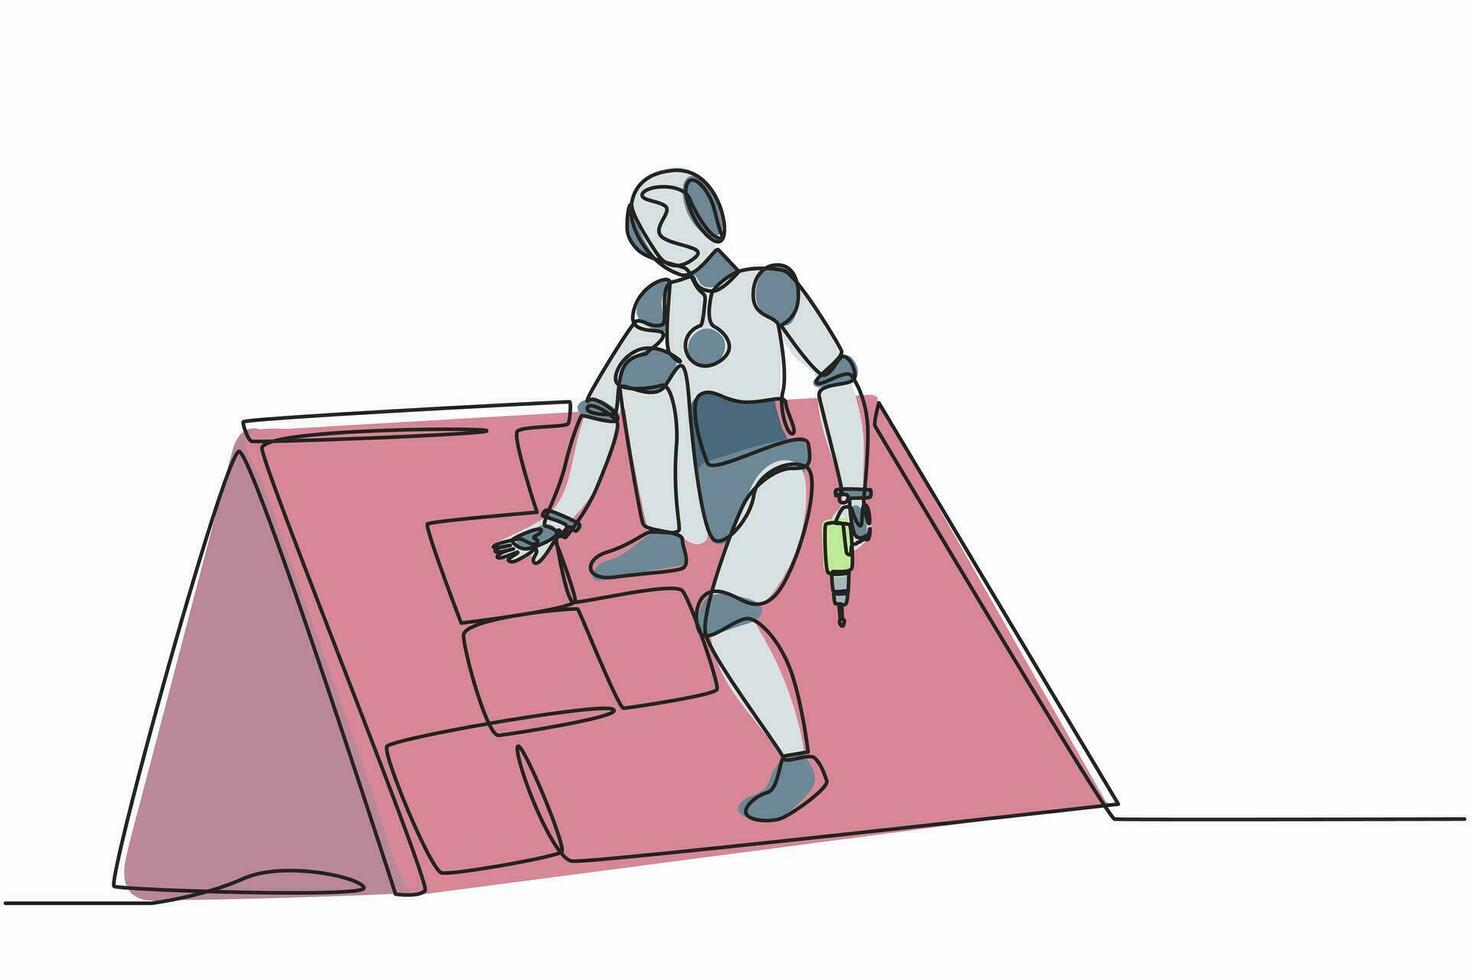 kontinuerlig en rad ritning robot takläggare installerar trä eller bitumen singel. humanoid robot cybernetisk organism. framtida robotutveckling. enda rad rita design vektorgrafisk illustration vektor